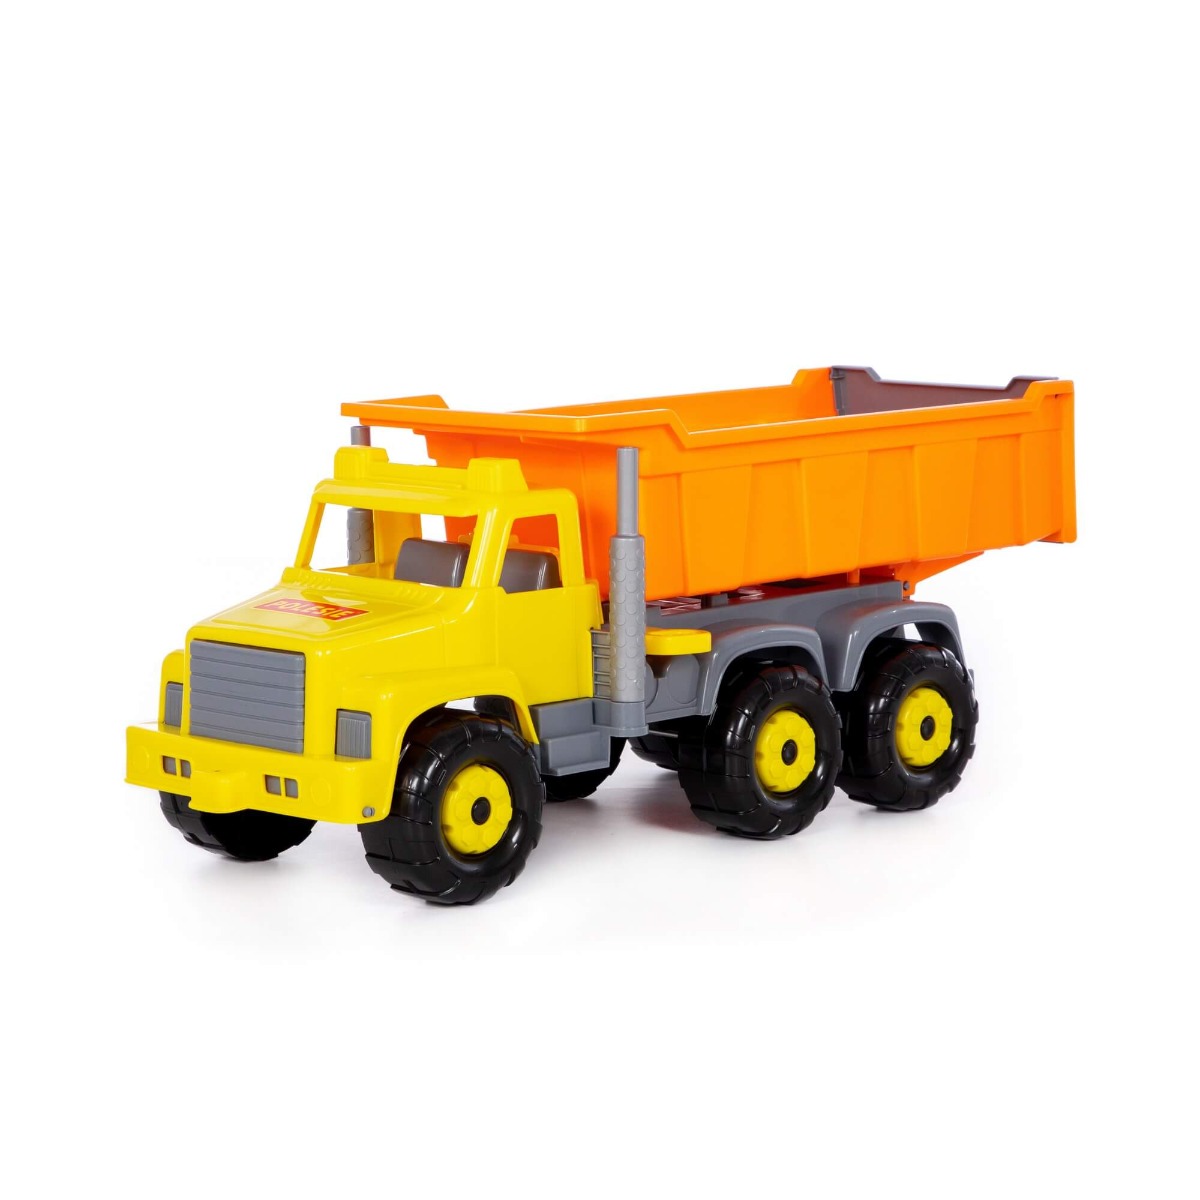 სატვირთო მანქანა "სუპერგიგანტი" - Polesie - Dump Truck "Supergigante" pg-81156  color Yellow 